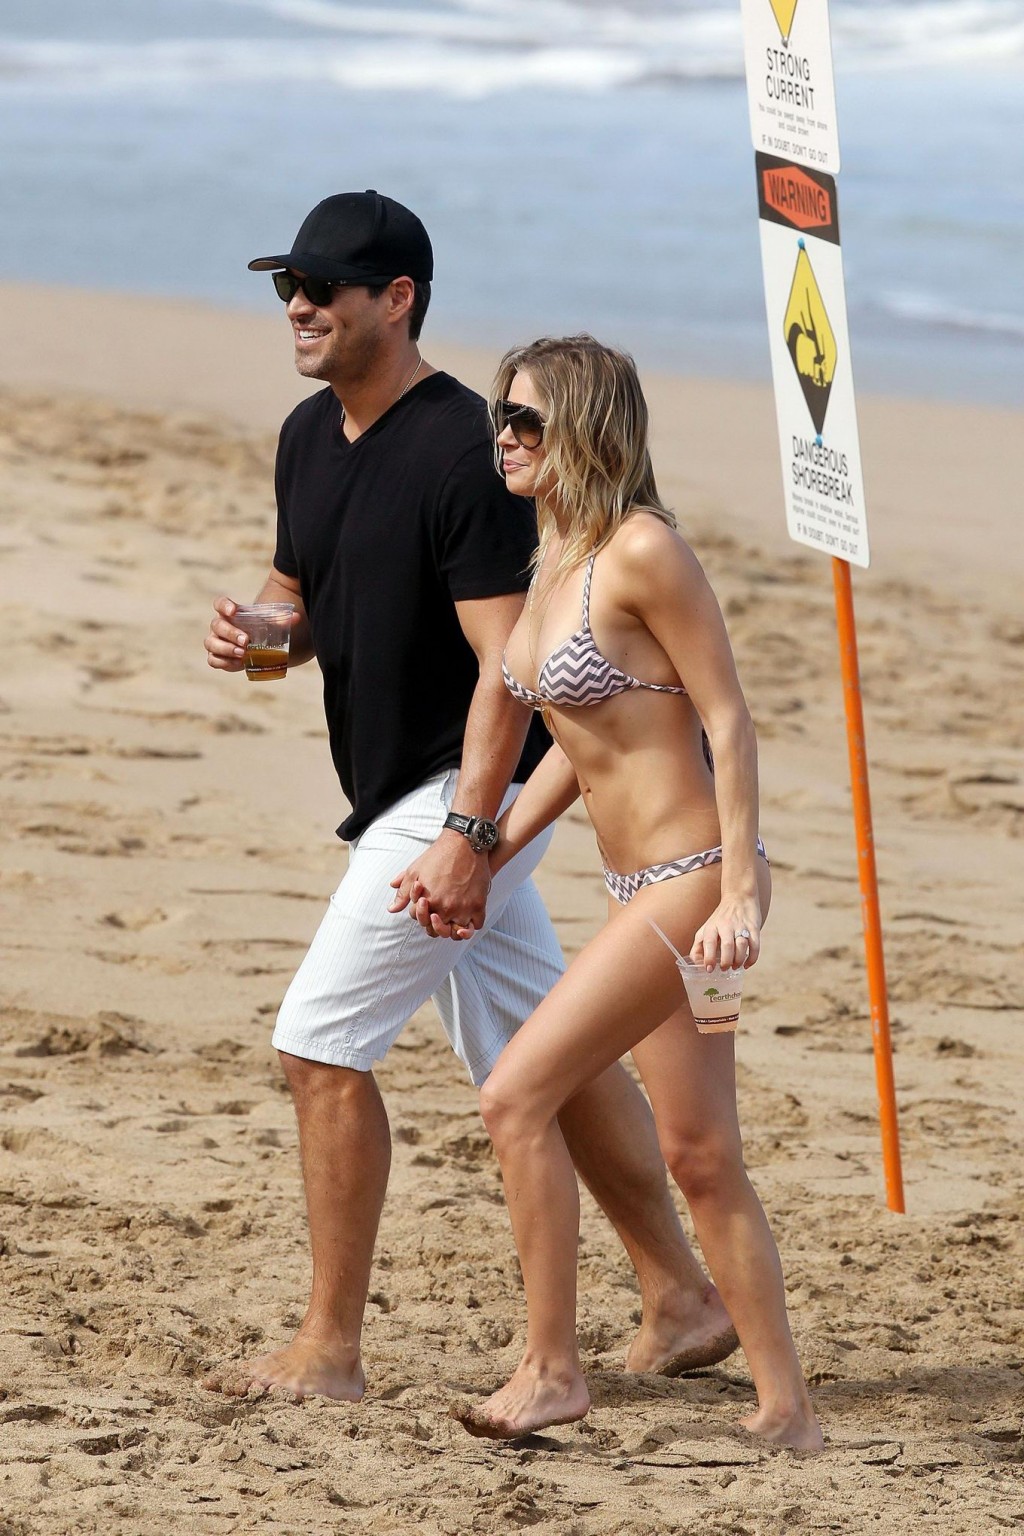 Leann Rimes im Bikini beim Petting mit ihrem Ehemann am hawaiianischen Strand
 #75276859